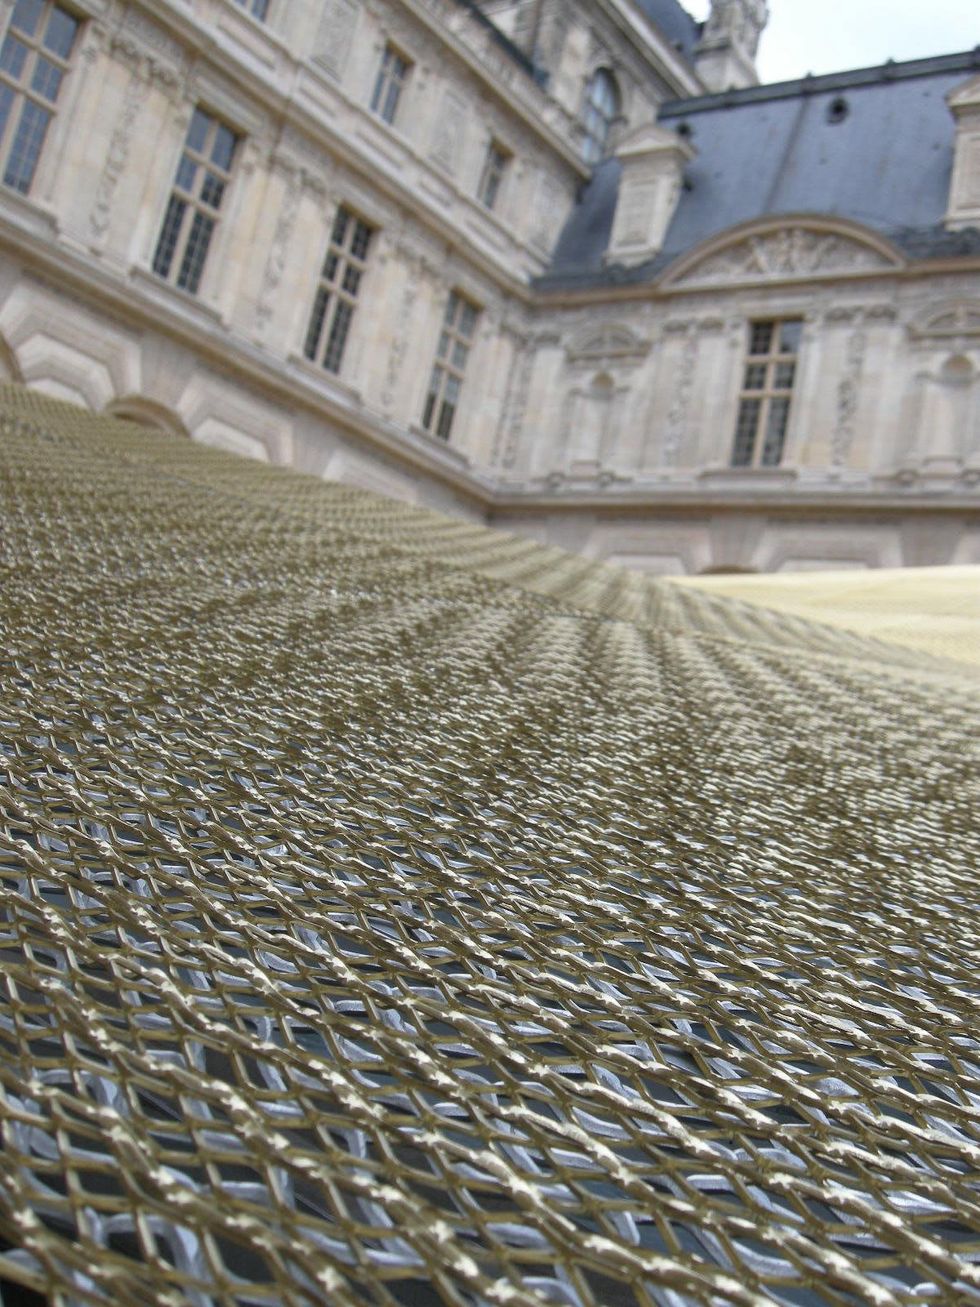 Louvre Paris tour July 2013 mesh roof